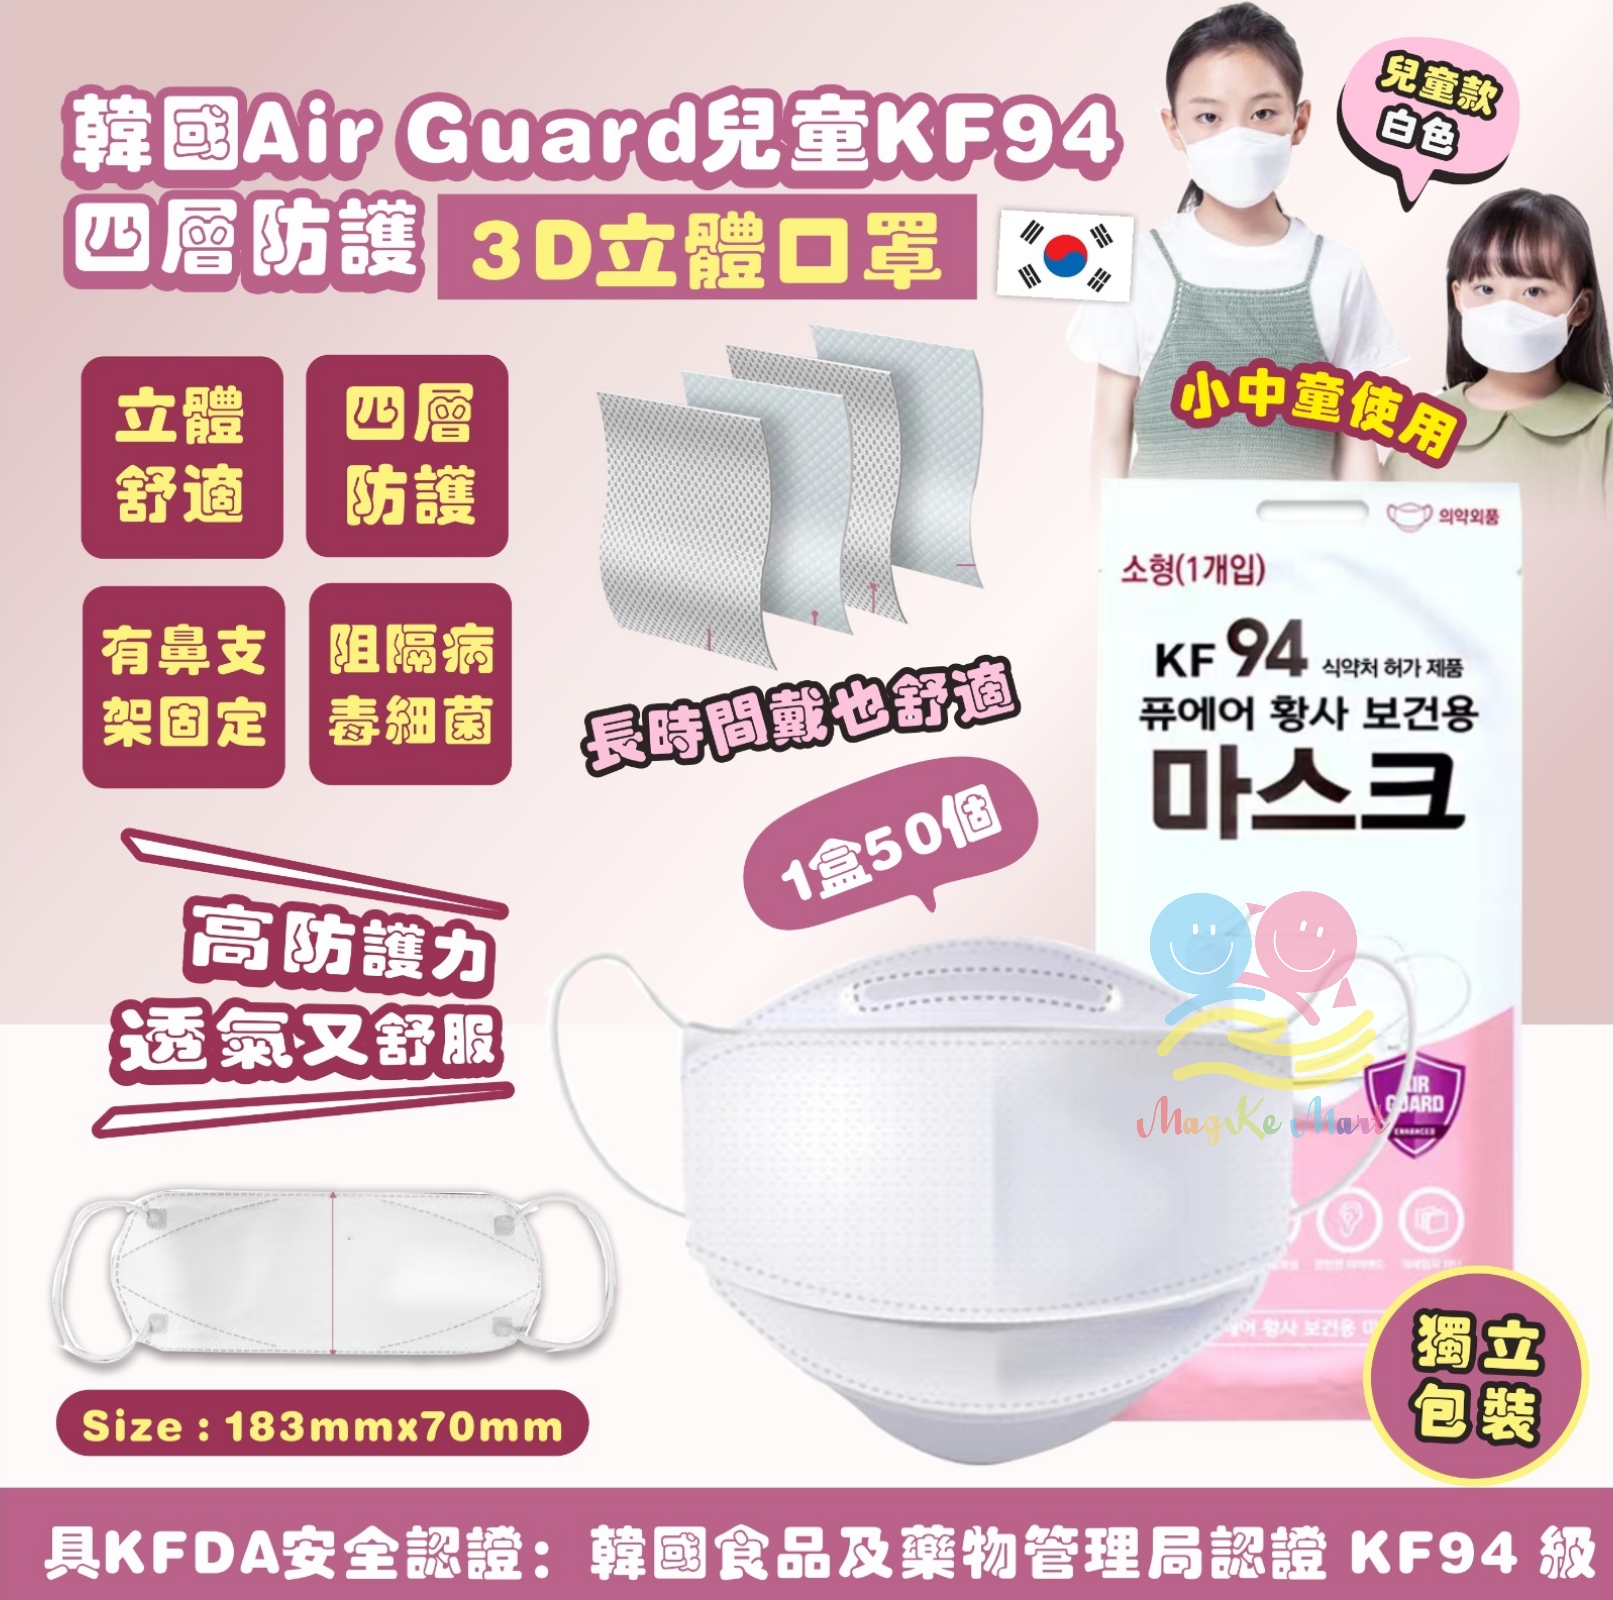 韓國 Air Guard 兒童KF94四層防護3D立體口罩(1盒50個)(獨立包裝)